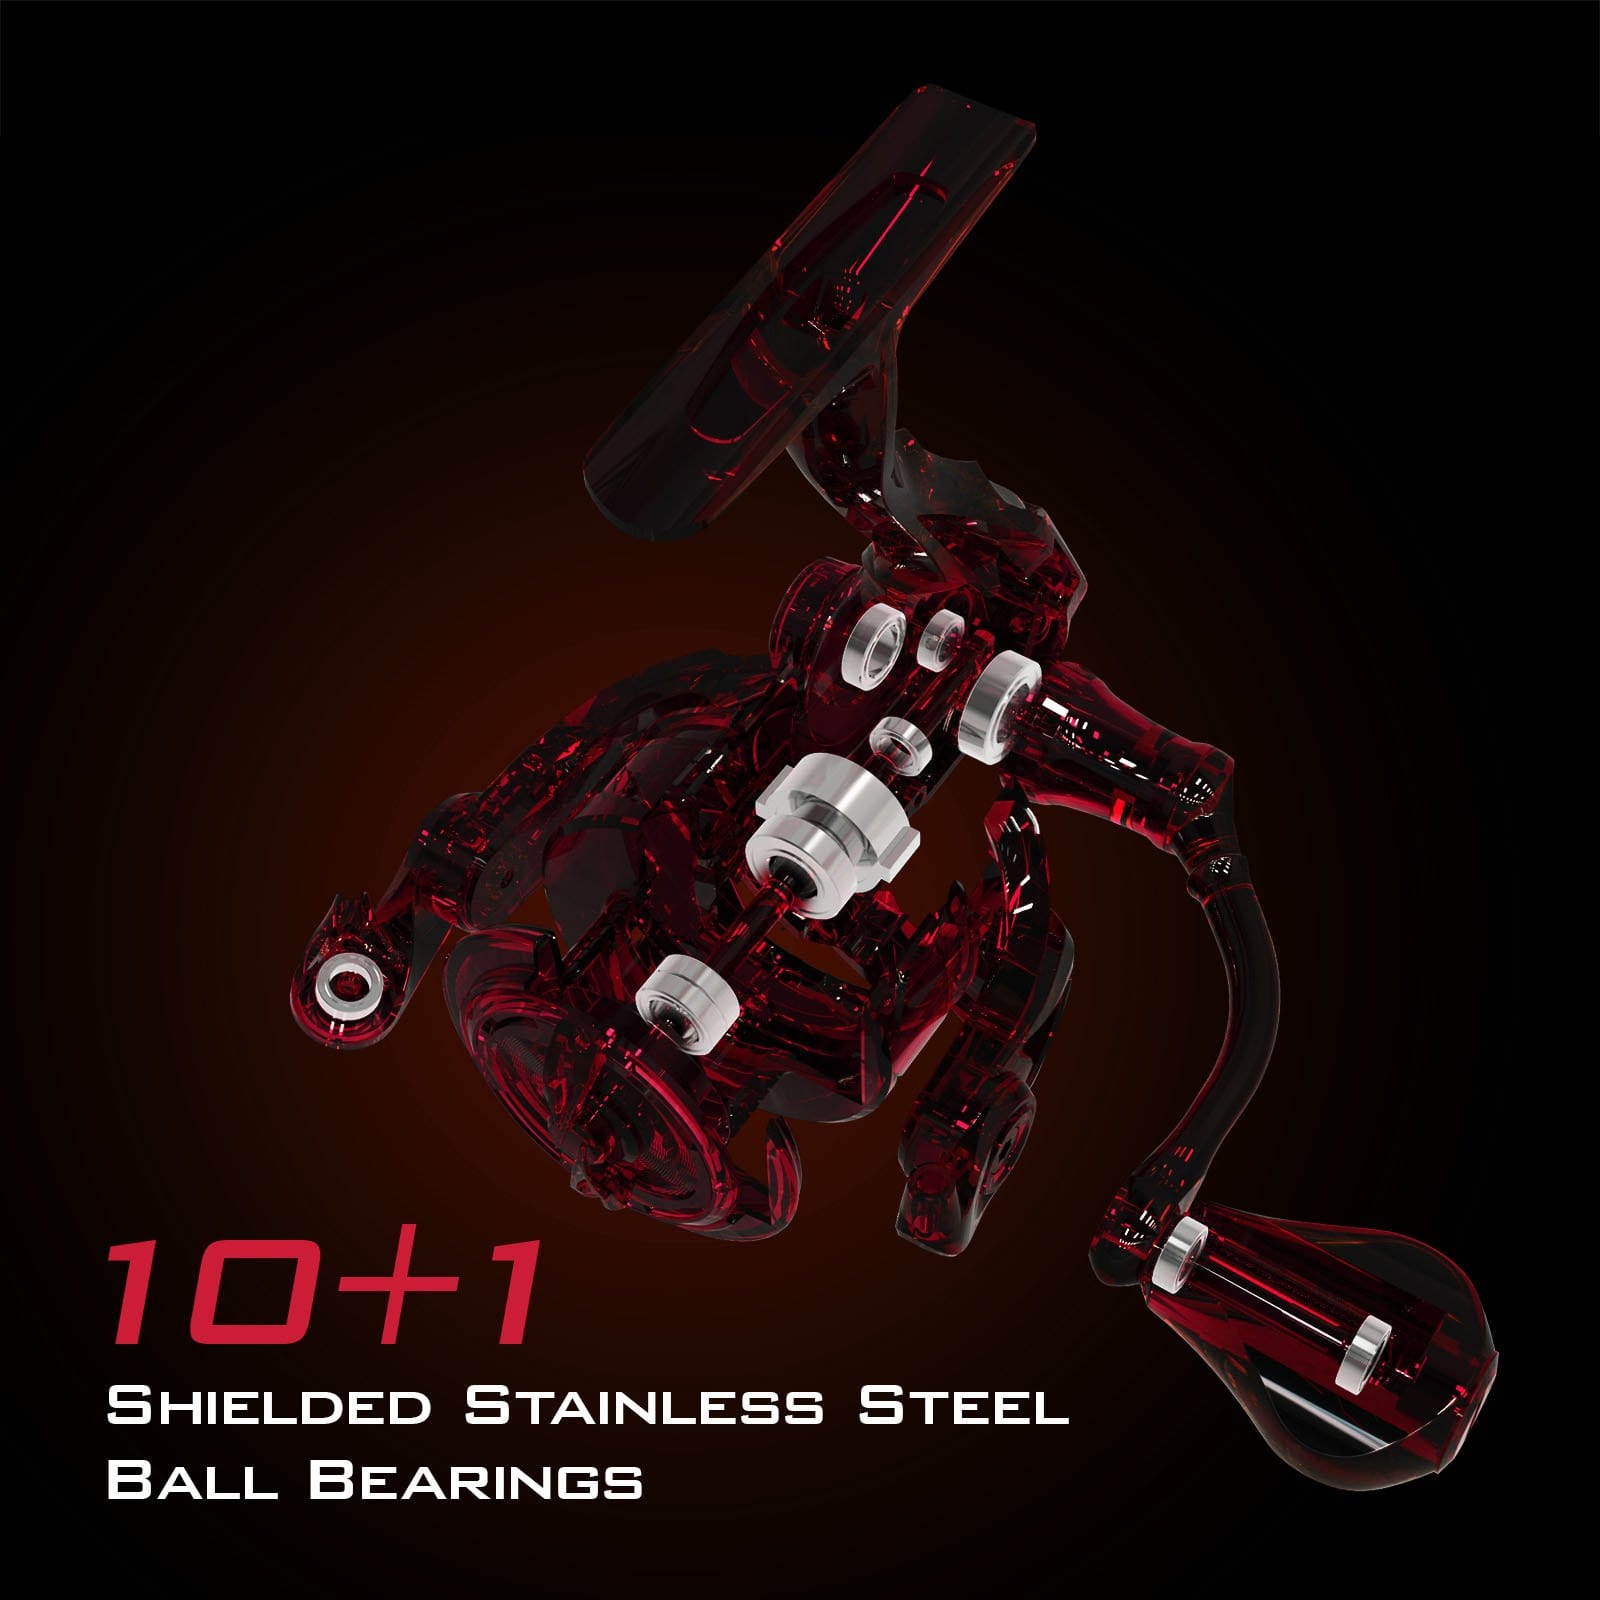 KastKing Speed Demon Spinning Reel - Black/Red for sale online